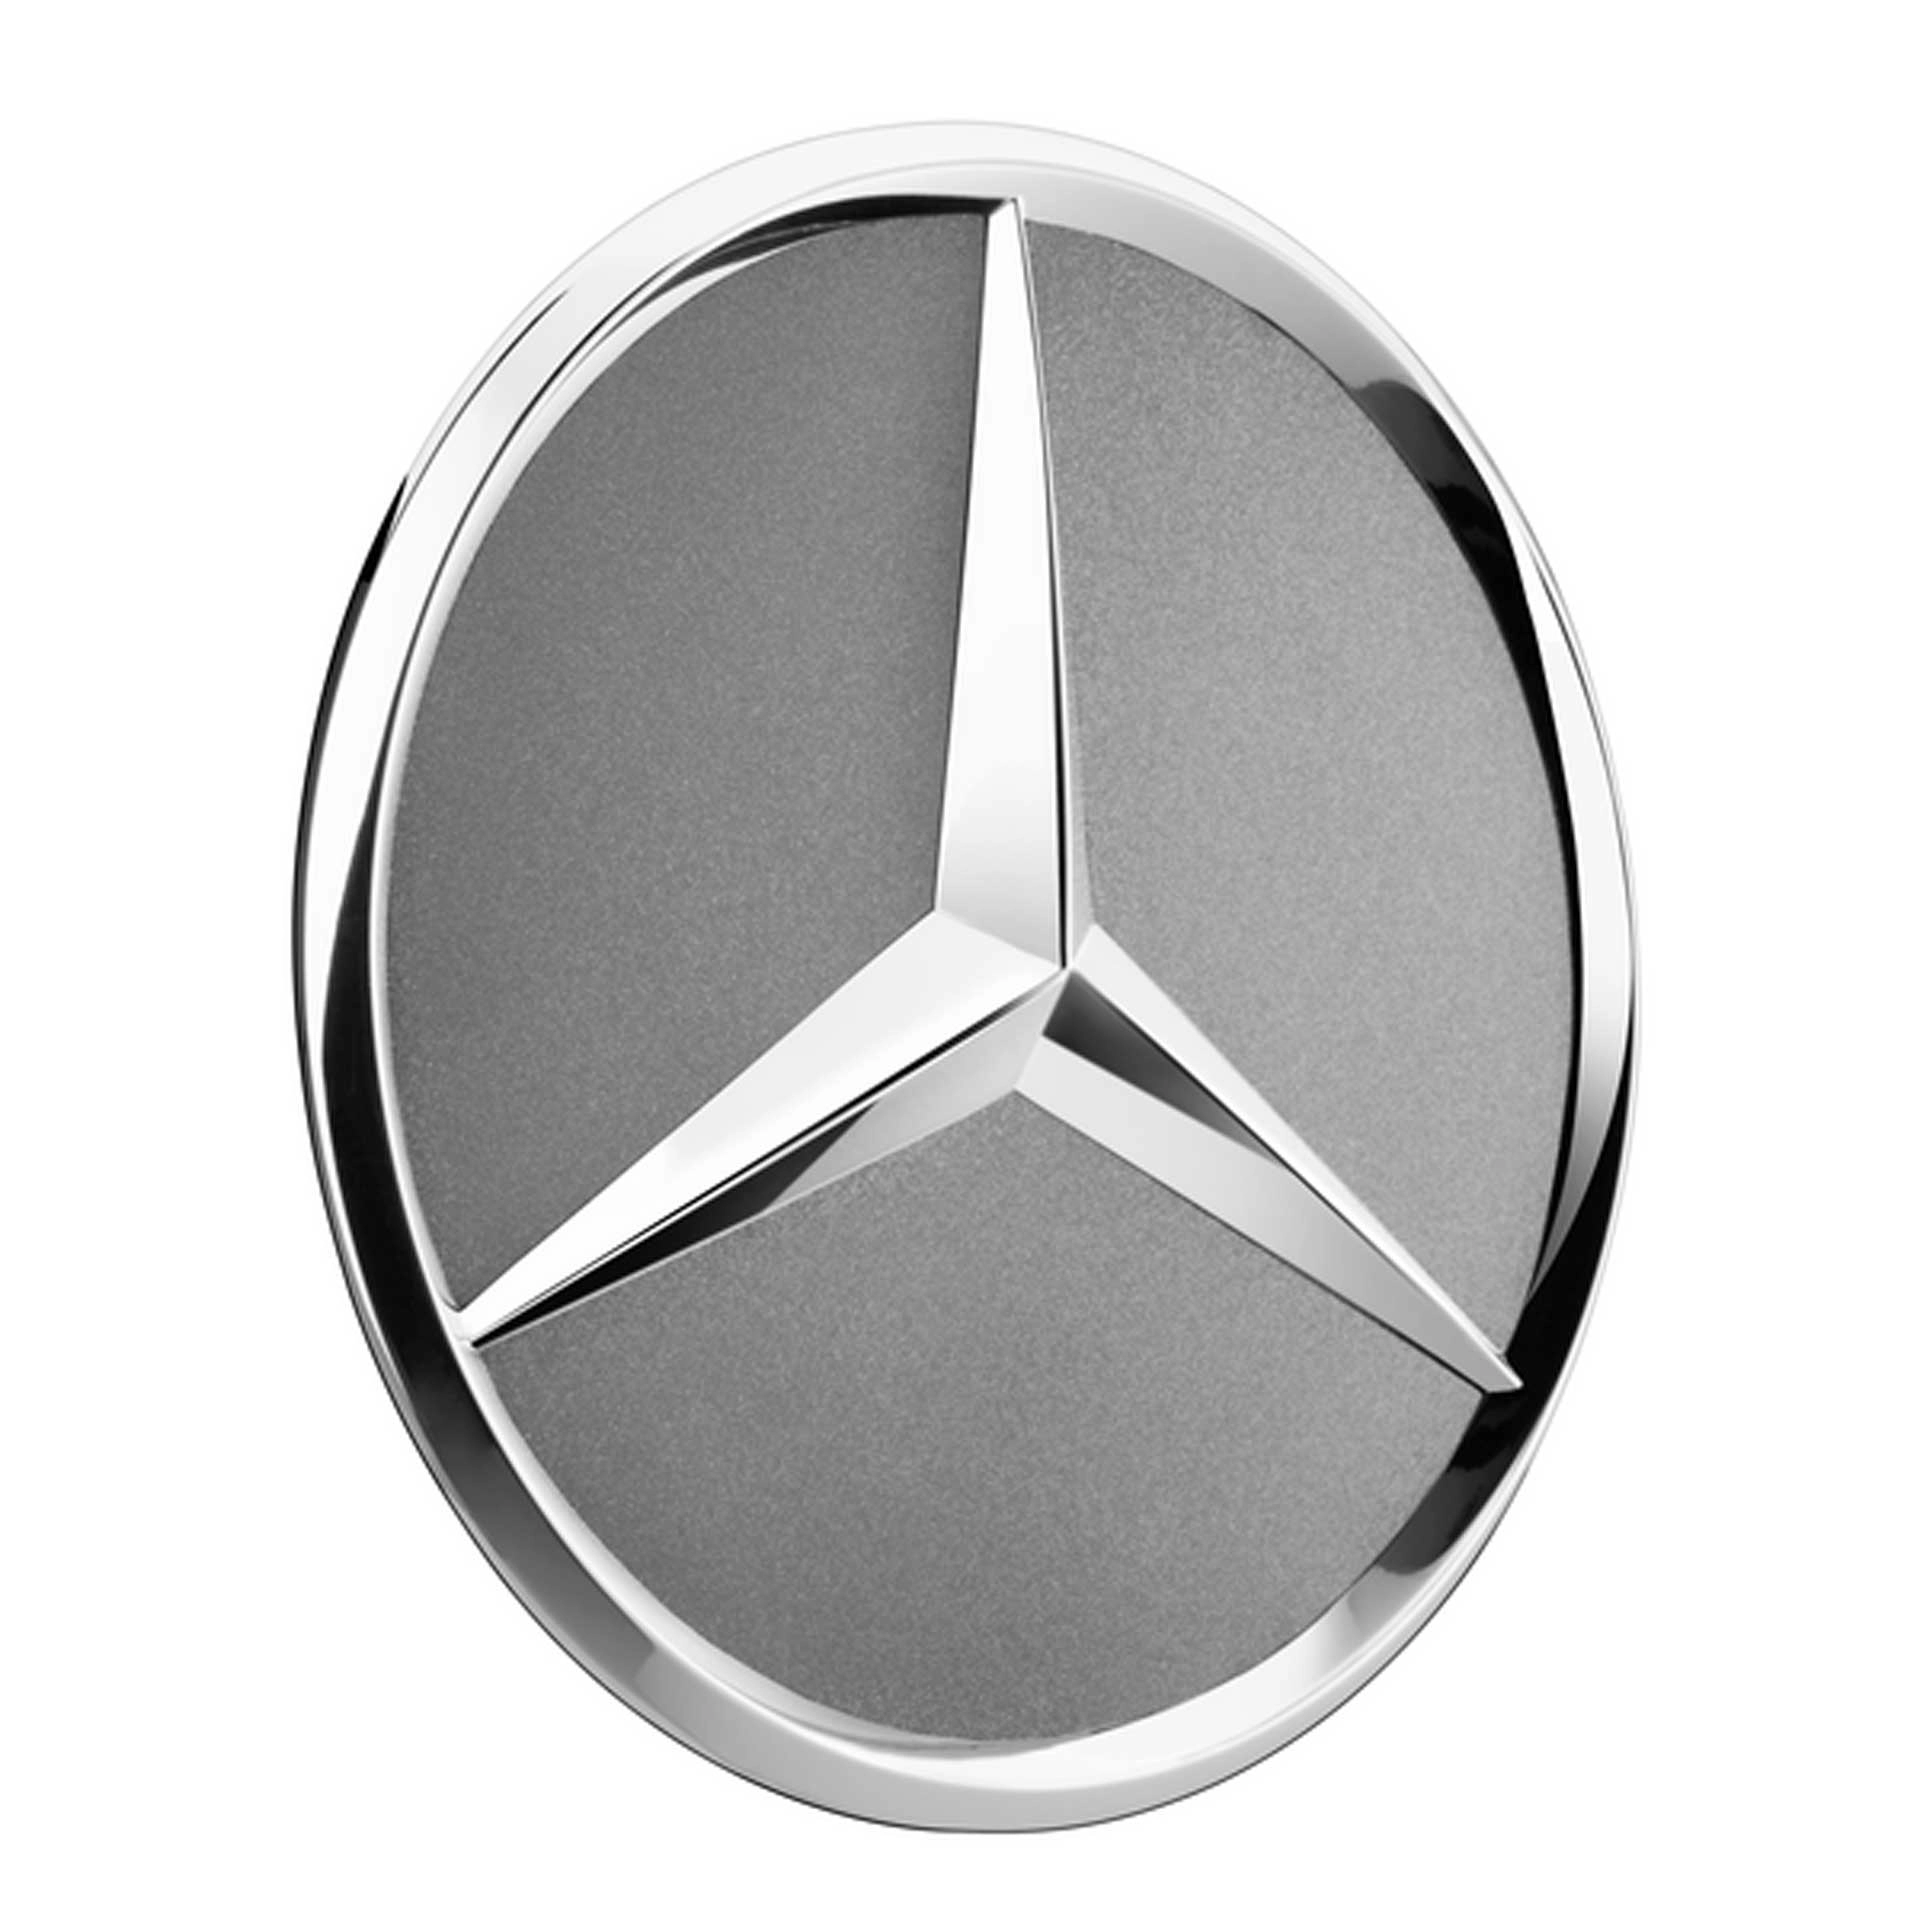 Mercedes-Benz Radnabenabdeckung Stern titangrau